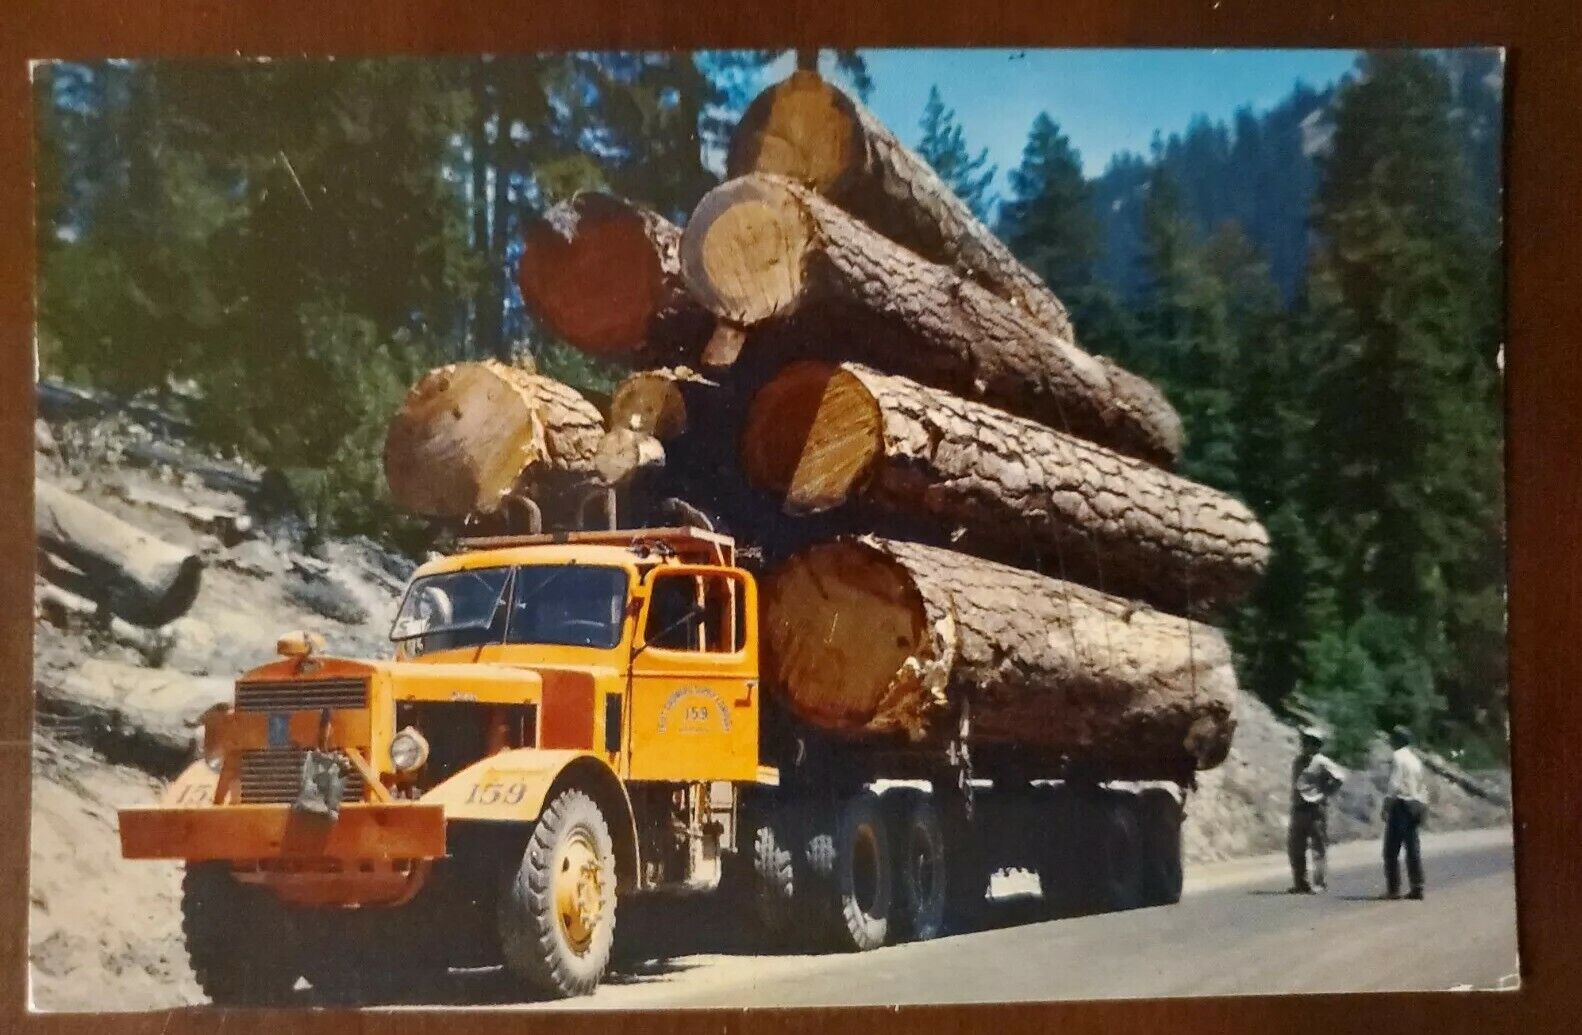 West Coast Massive Large Logging Truck Vintage Postcard